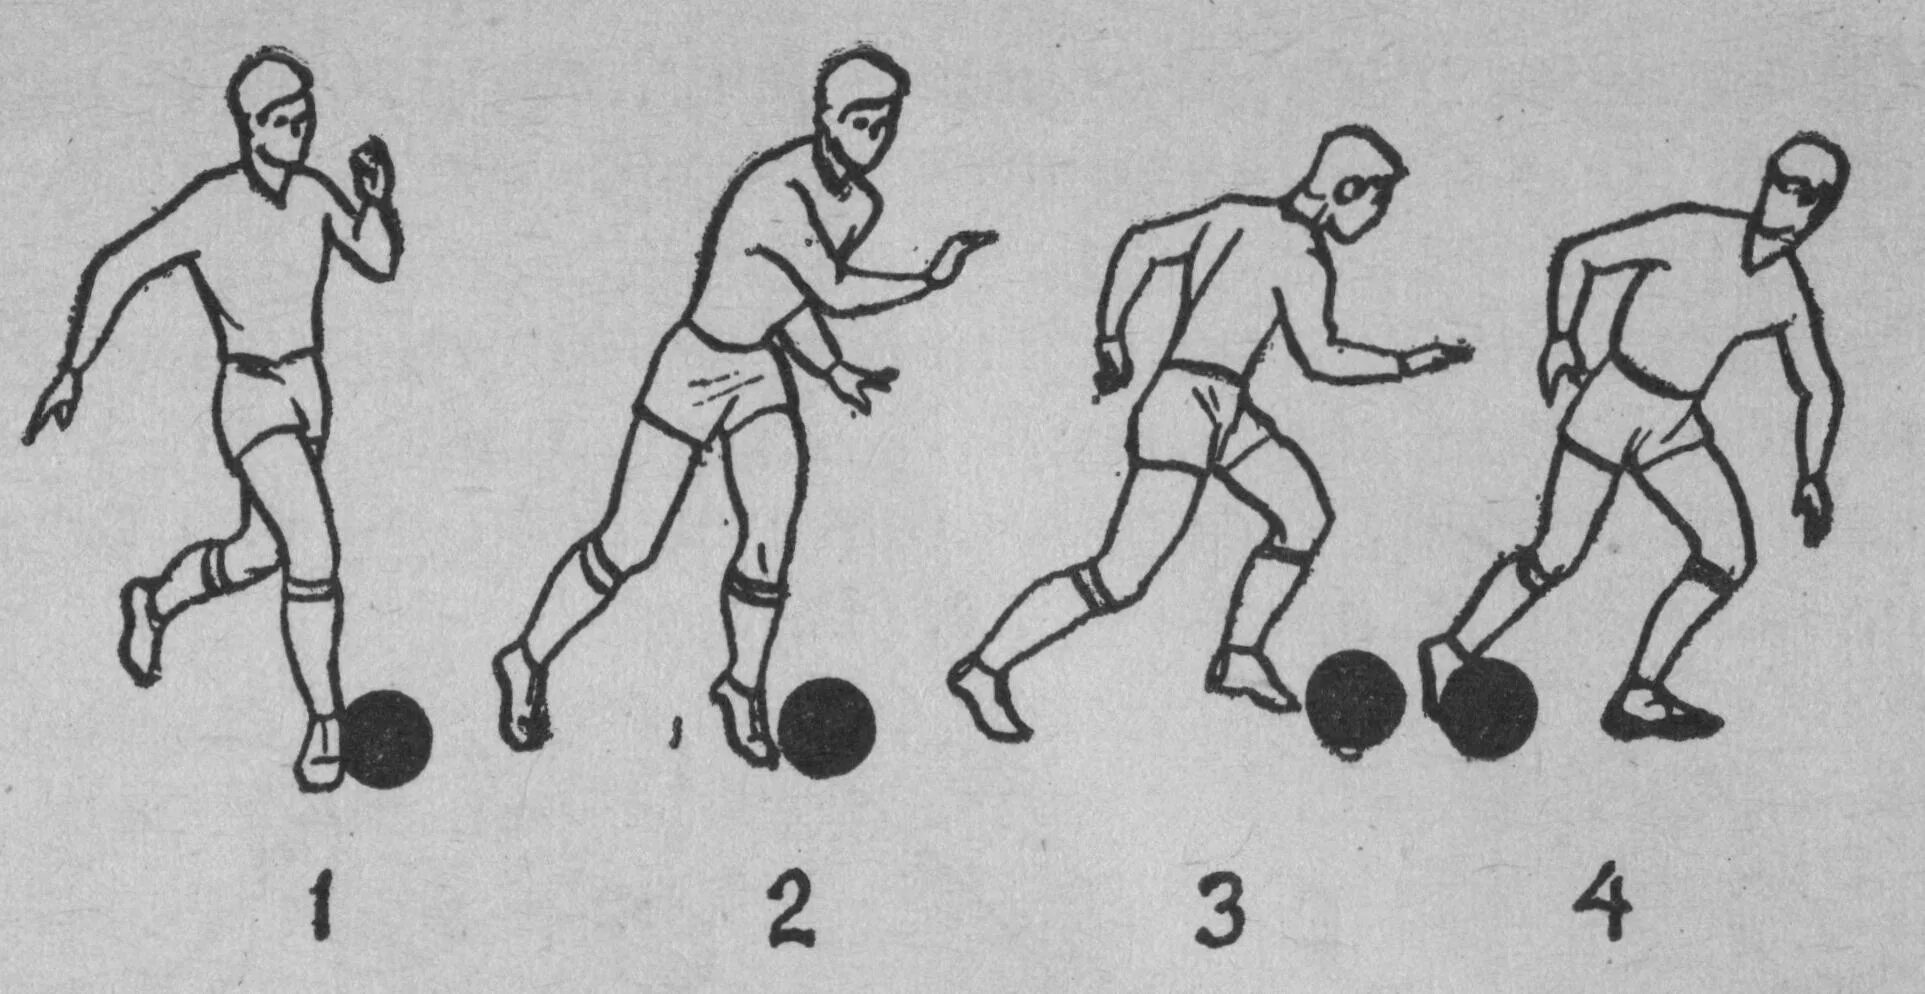 Ведение мяча ногой в футболе. Техники ведения мяча ногой в футболе. Приемы ведения мяча в футболе. Упражнения на технику ведения мяча в футболе. Ведение мяча удары